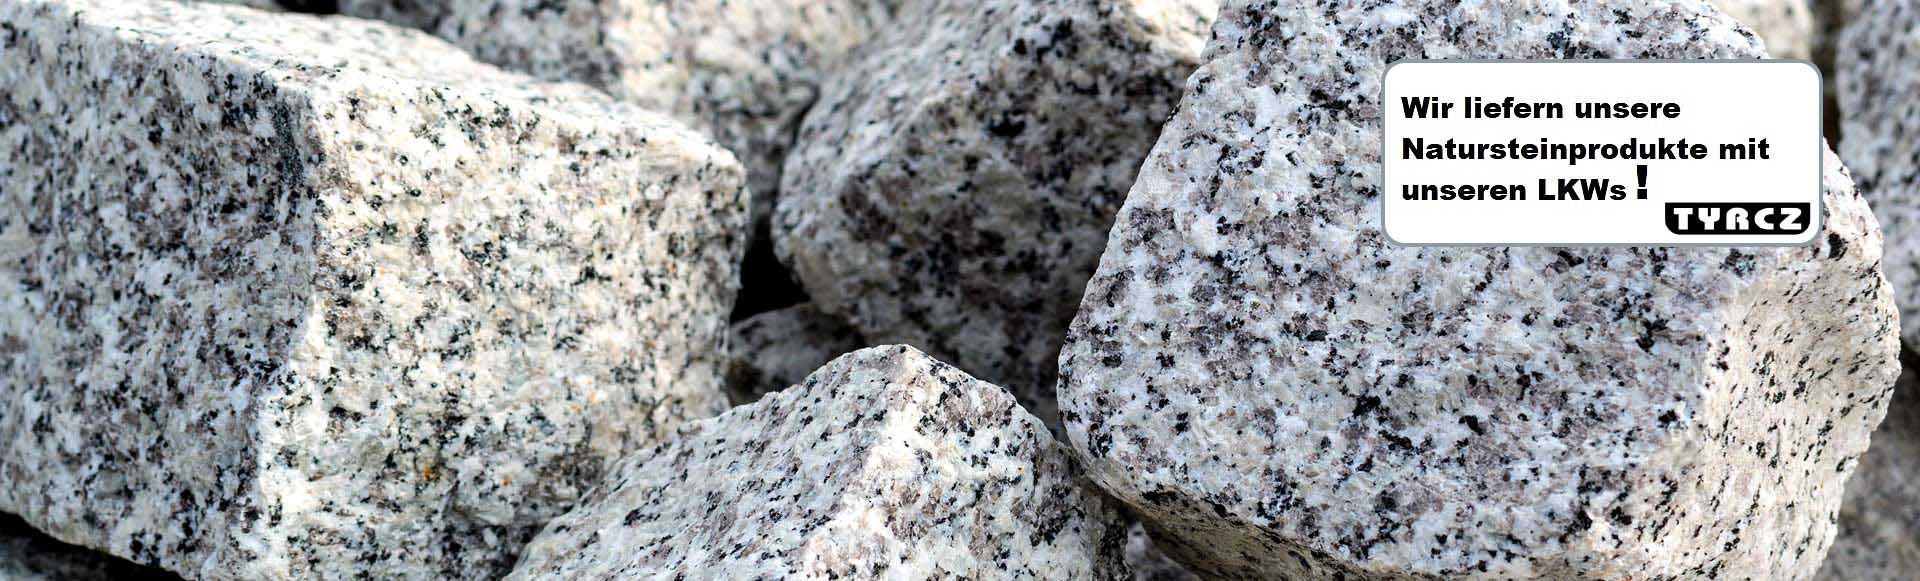 Naturstein. Granit. Sandstein. Tyrcz